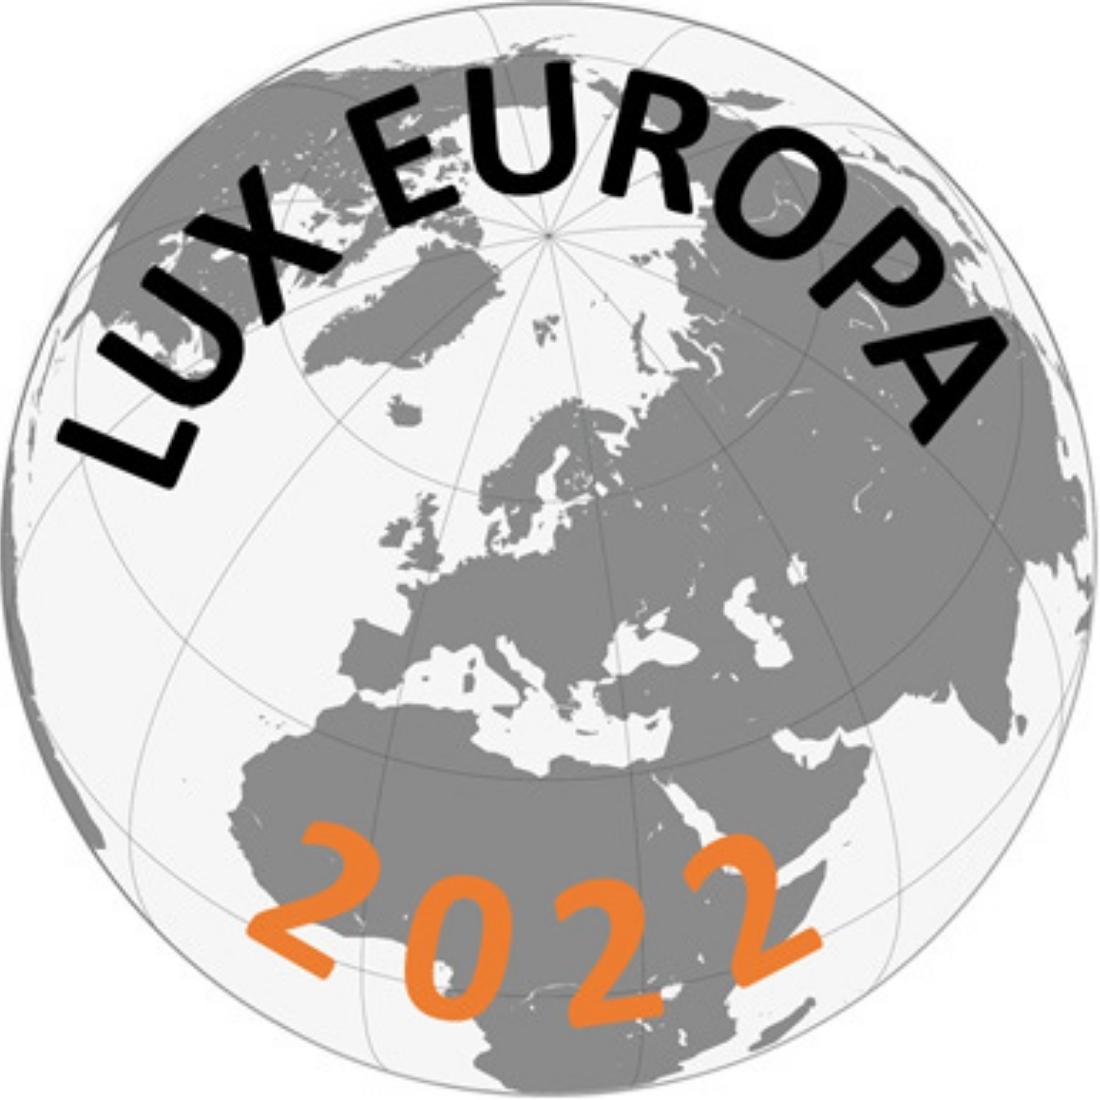 GL OPTIC lux europa european lighting conference europejska konferencja oświetleniowa